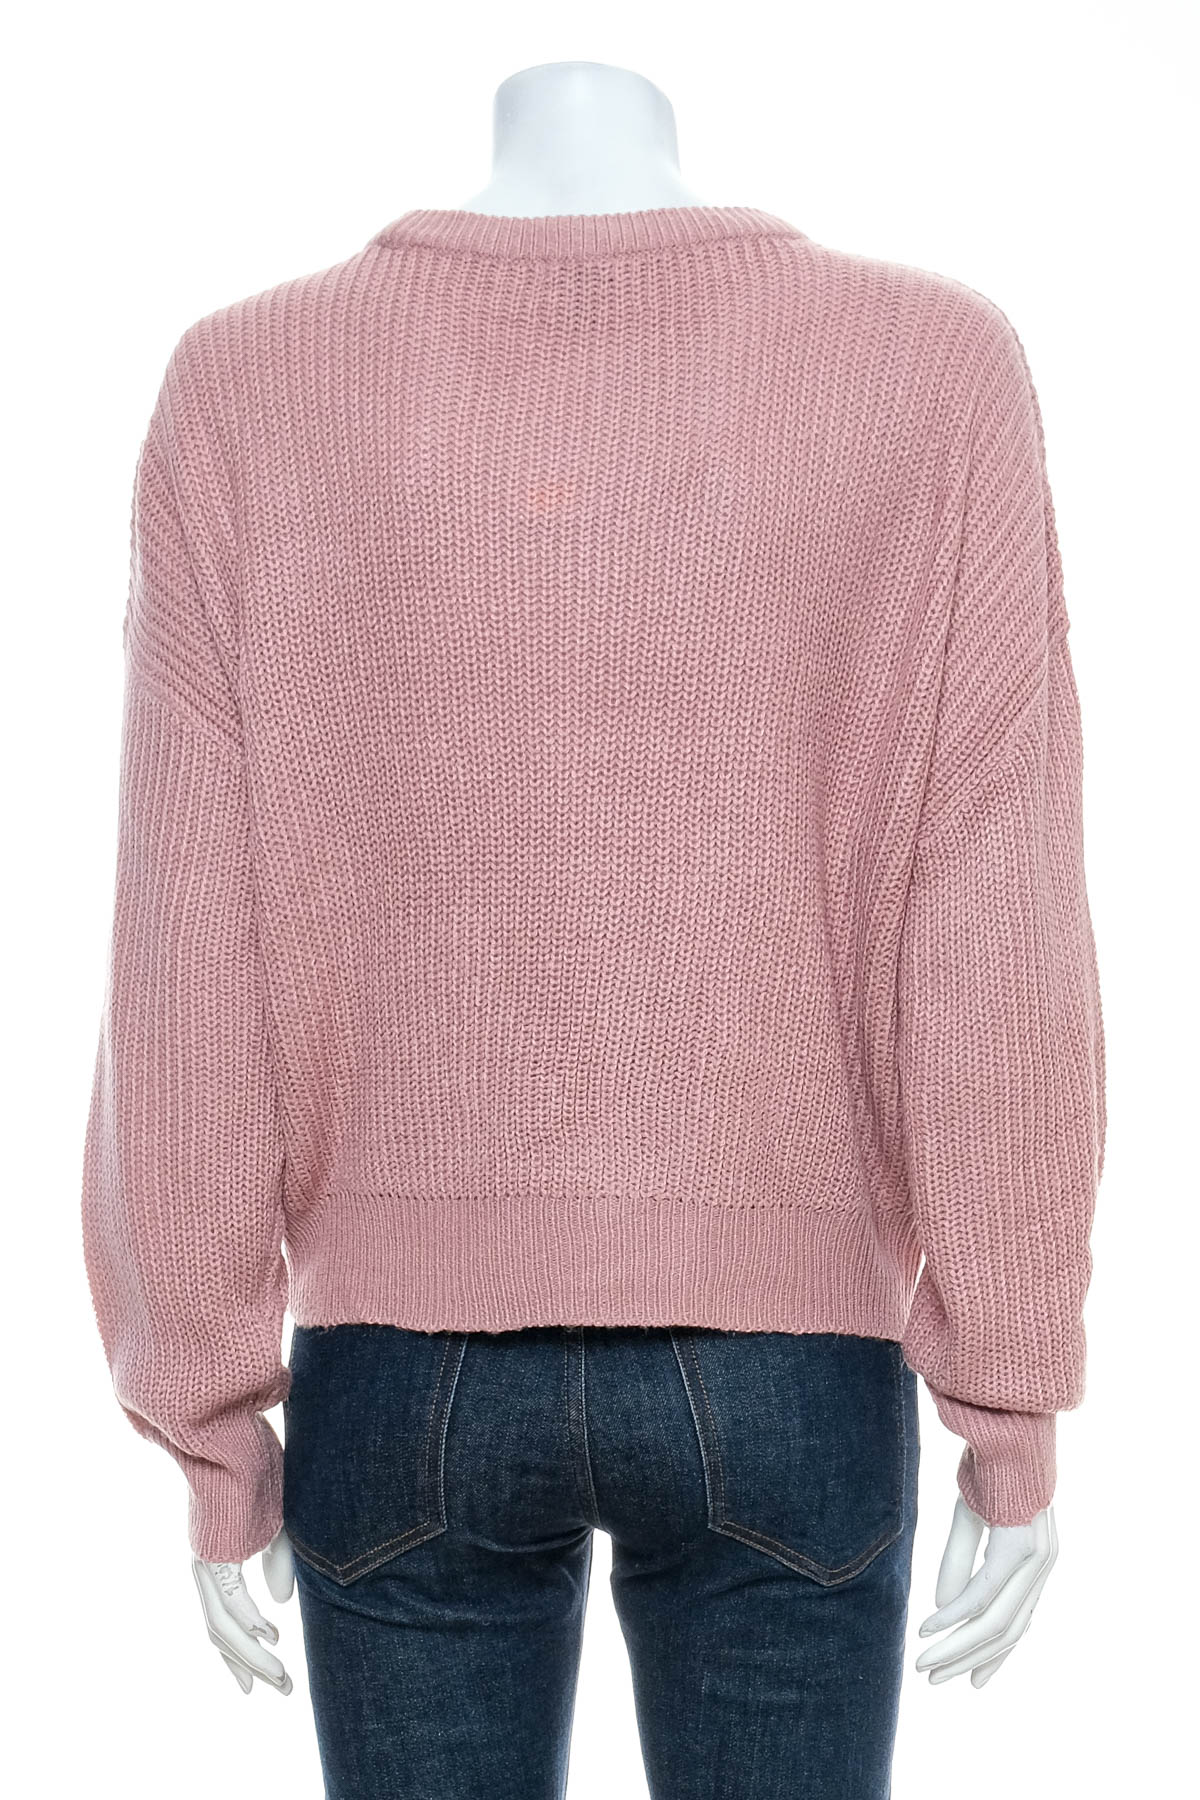 Women's sweater - UK2LA - 1